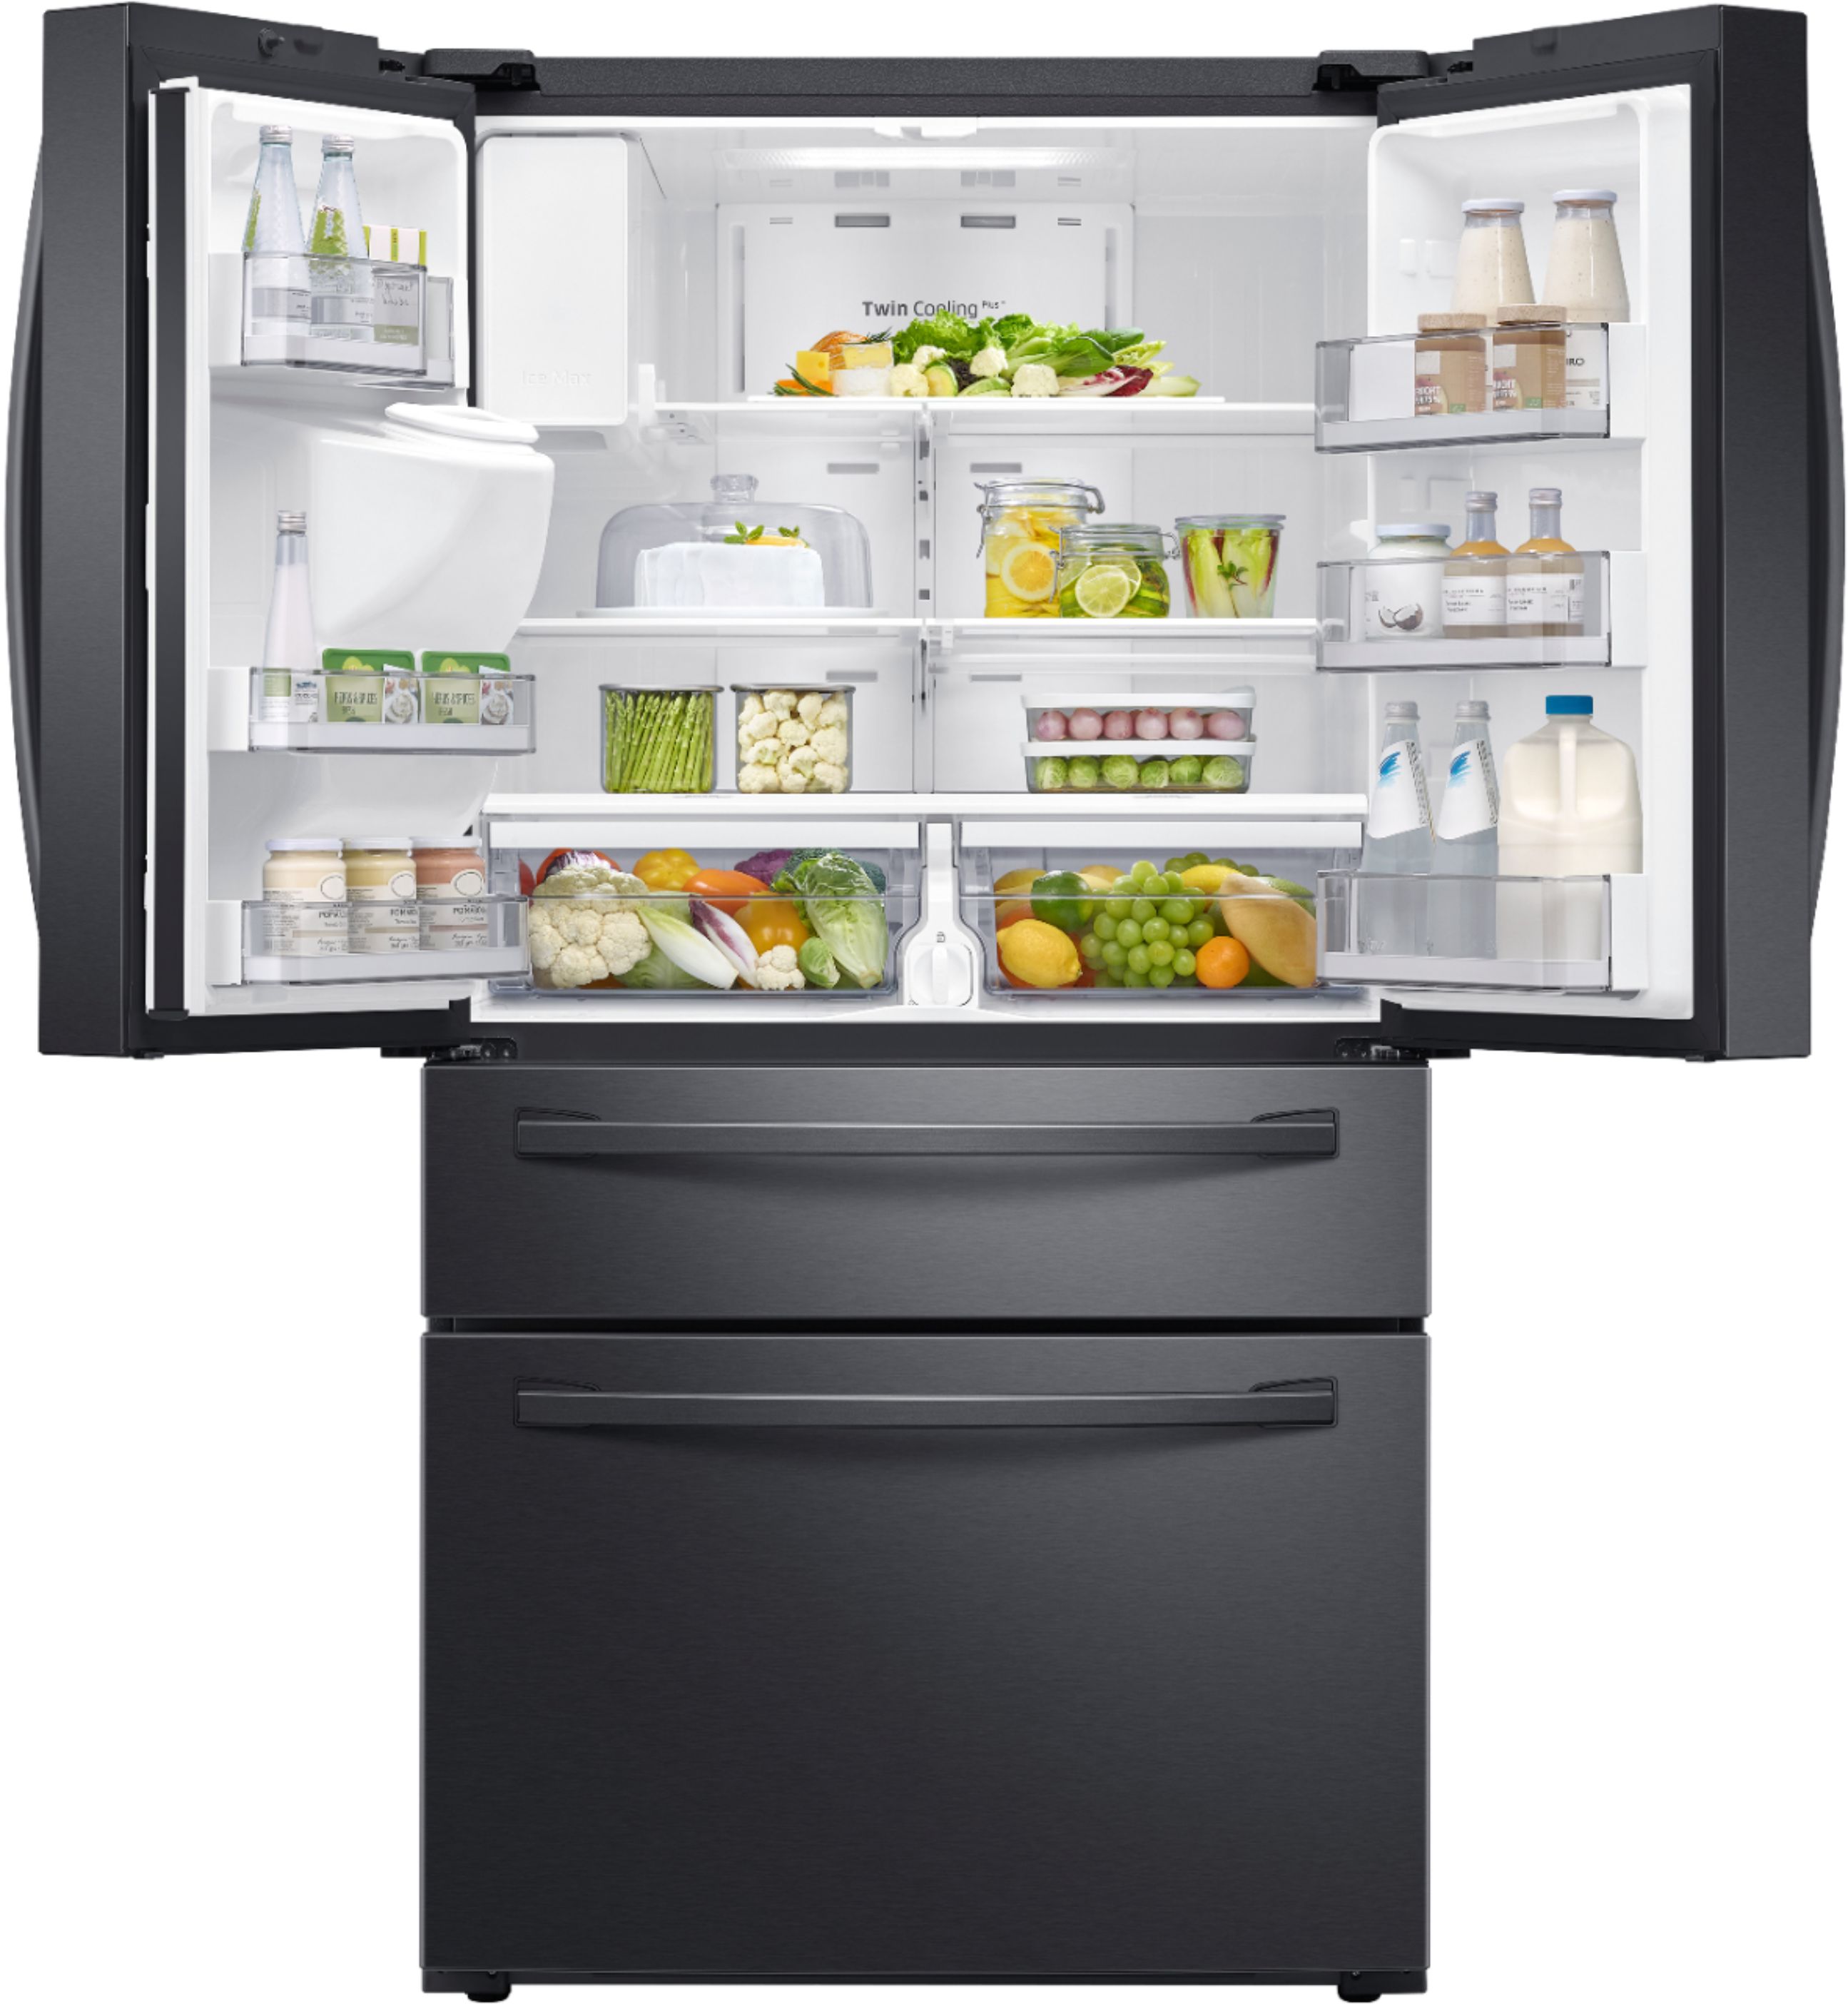 Samsung 28 cu. ft. 4Door French Door Refrigerator with FlexZone